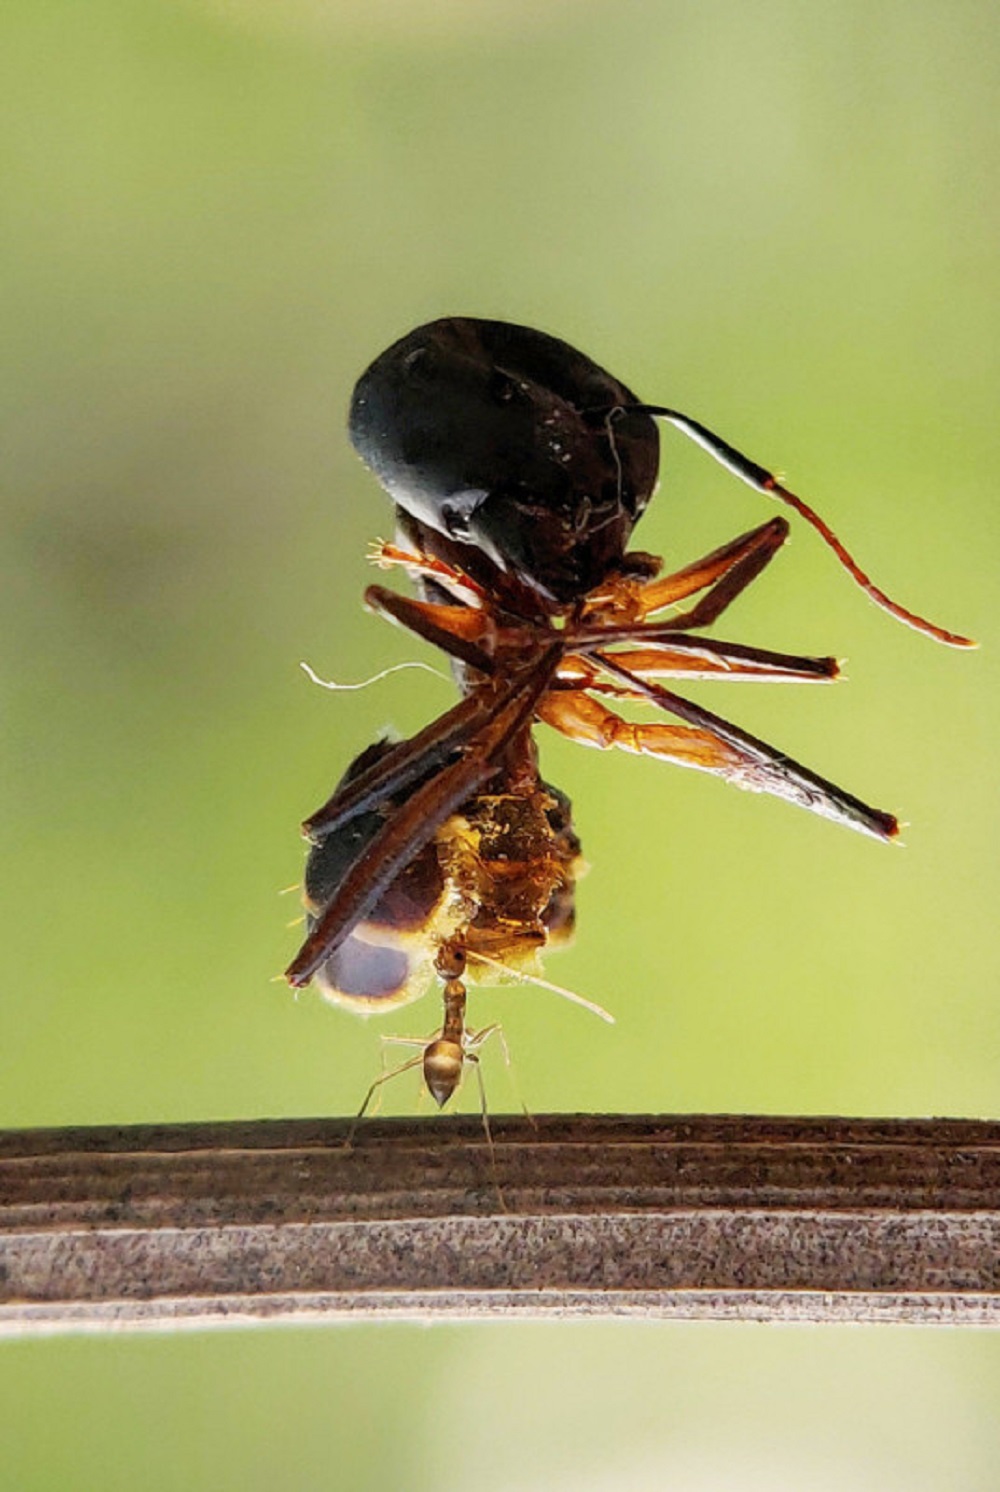 Furnică ce cară un păianjen mort care are o greutate de 7 ori mai mare ca a sa.